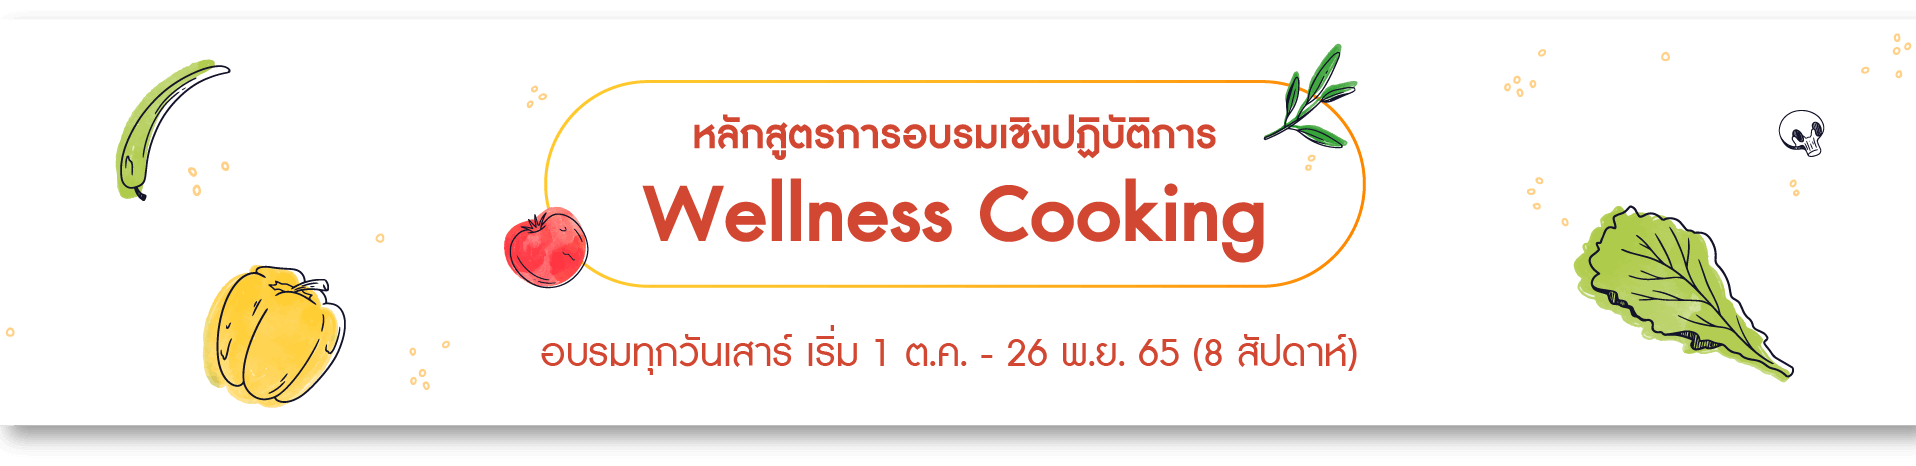 หลักสูตรการอบรมเชิงปฏิบัติการ Wellness Cooking รุ่น 2